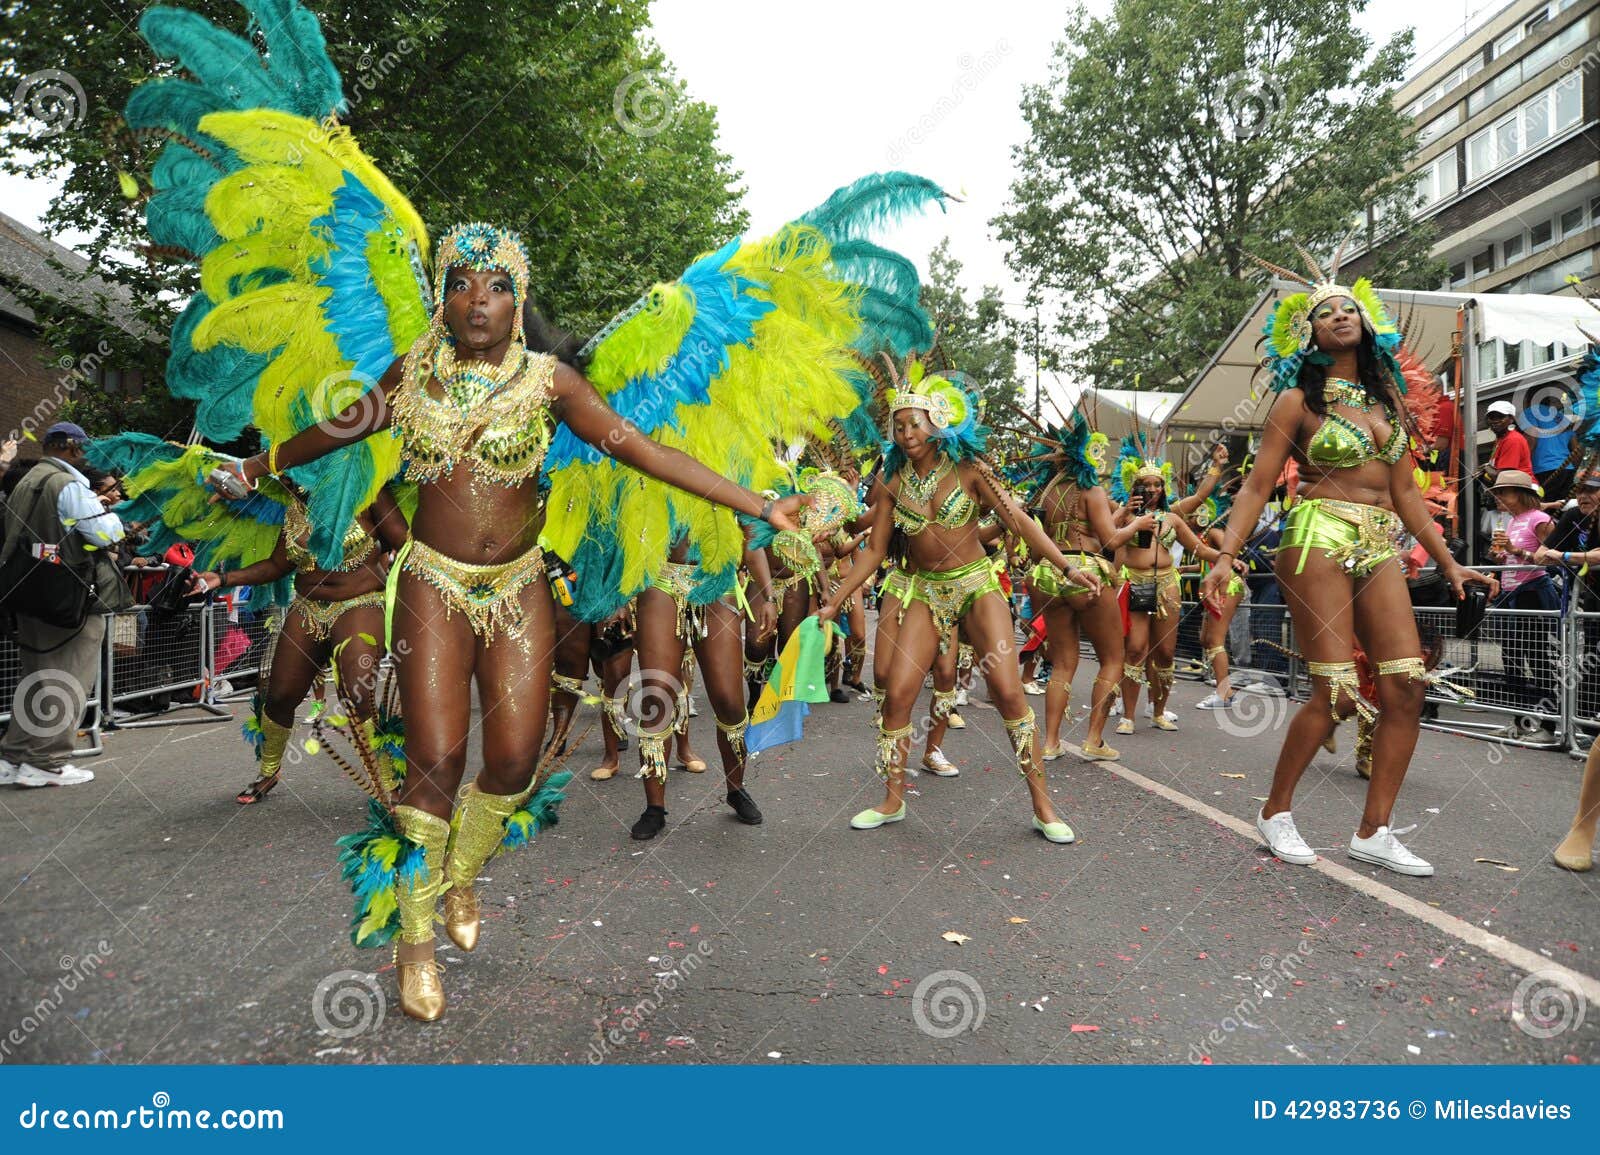 Carnaval Londres 2012 de Notting Hill. Fotografía de los participantes del carnaval en el carnaval Londres de Notting Hill que lleva el vestido principal tradicional y la ropa del Caribe del festival